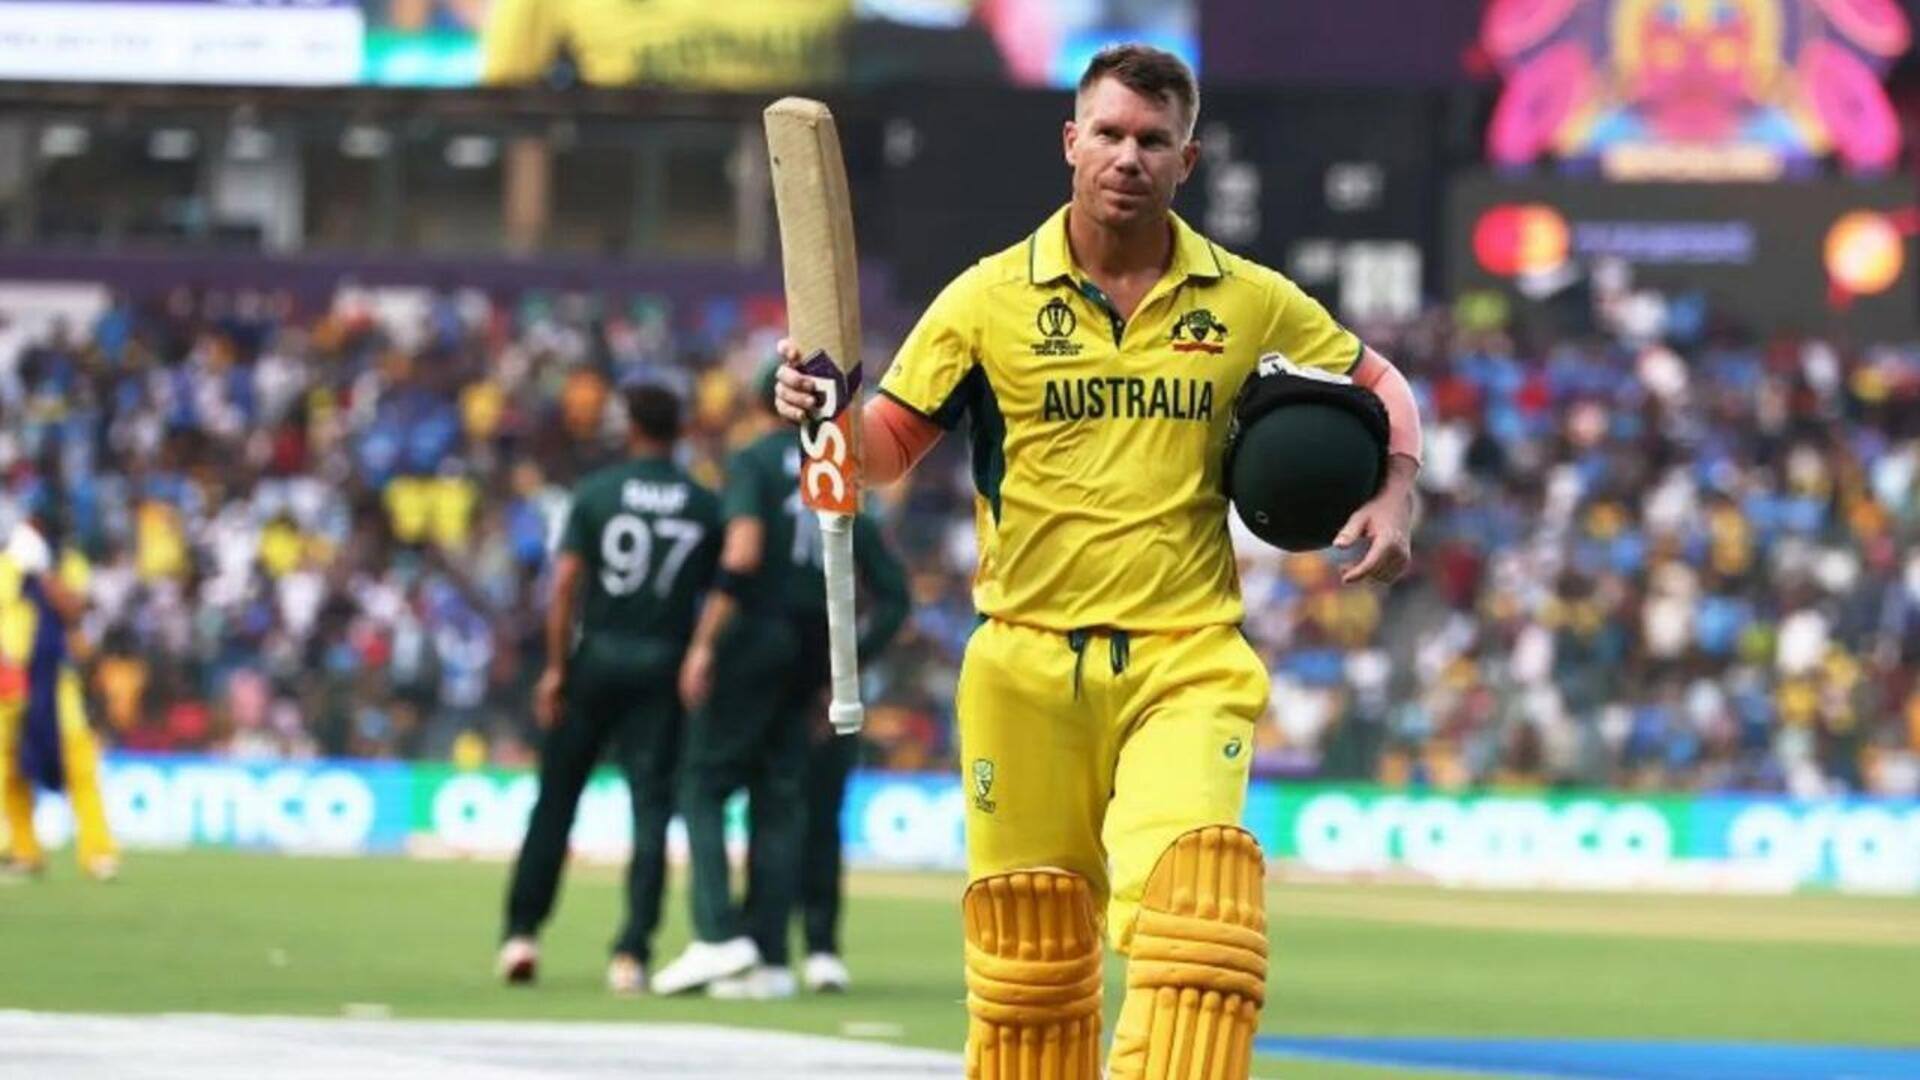 डेविड वार्नर भारत के खिलाफ टी-20 सीरीज का हिस्सा नहीं होंगे, ऑस्ट्रेलिया वापस लौटे